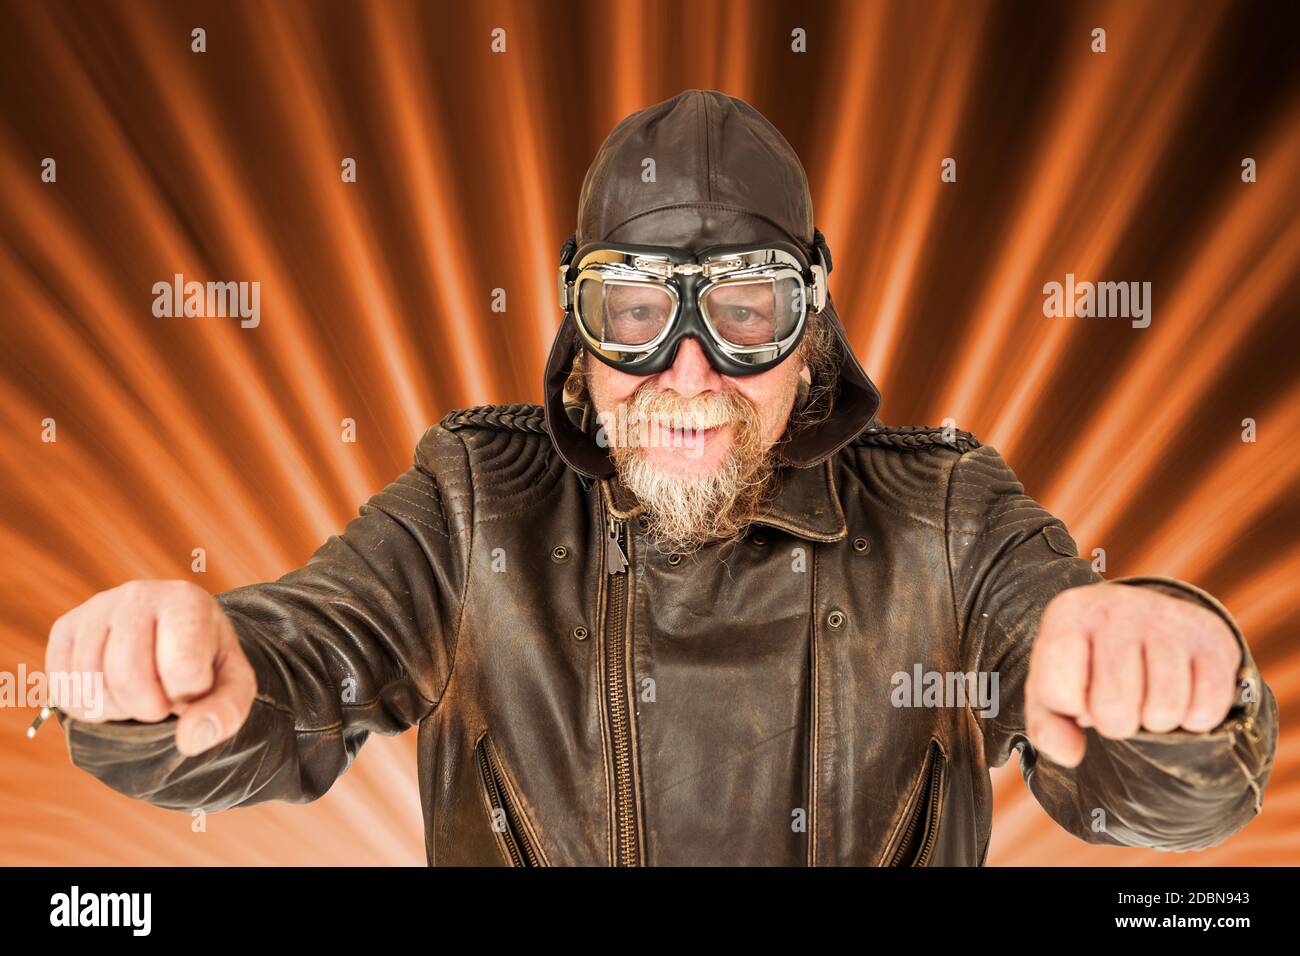 Composition de l'image avec vue frontale du haut du corps d'un homme plus âgé dans une veste de moto marron, portée, casquette de moto et lunettes de moto traditionnelles Banque D'Images